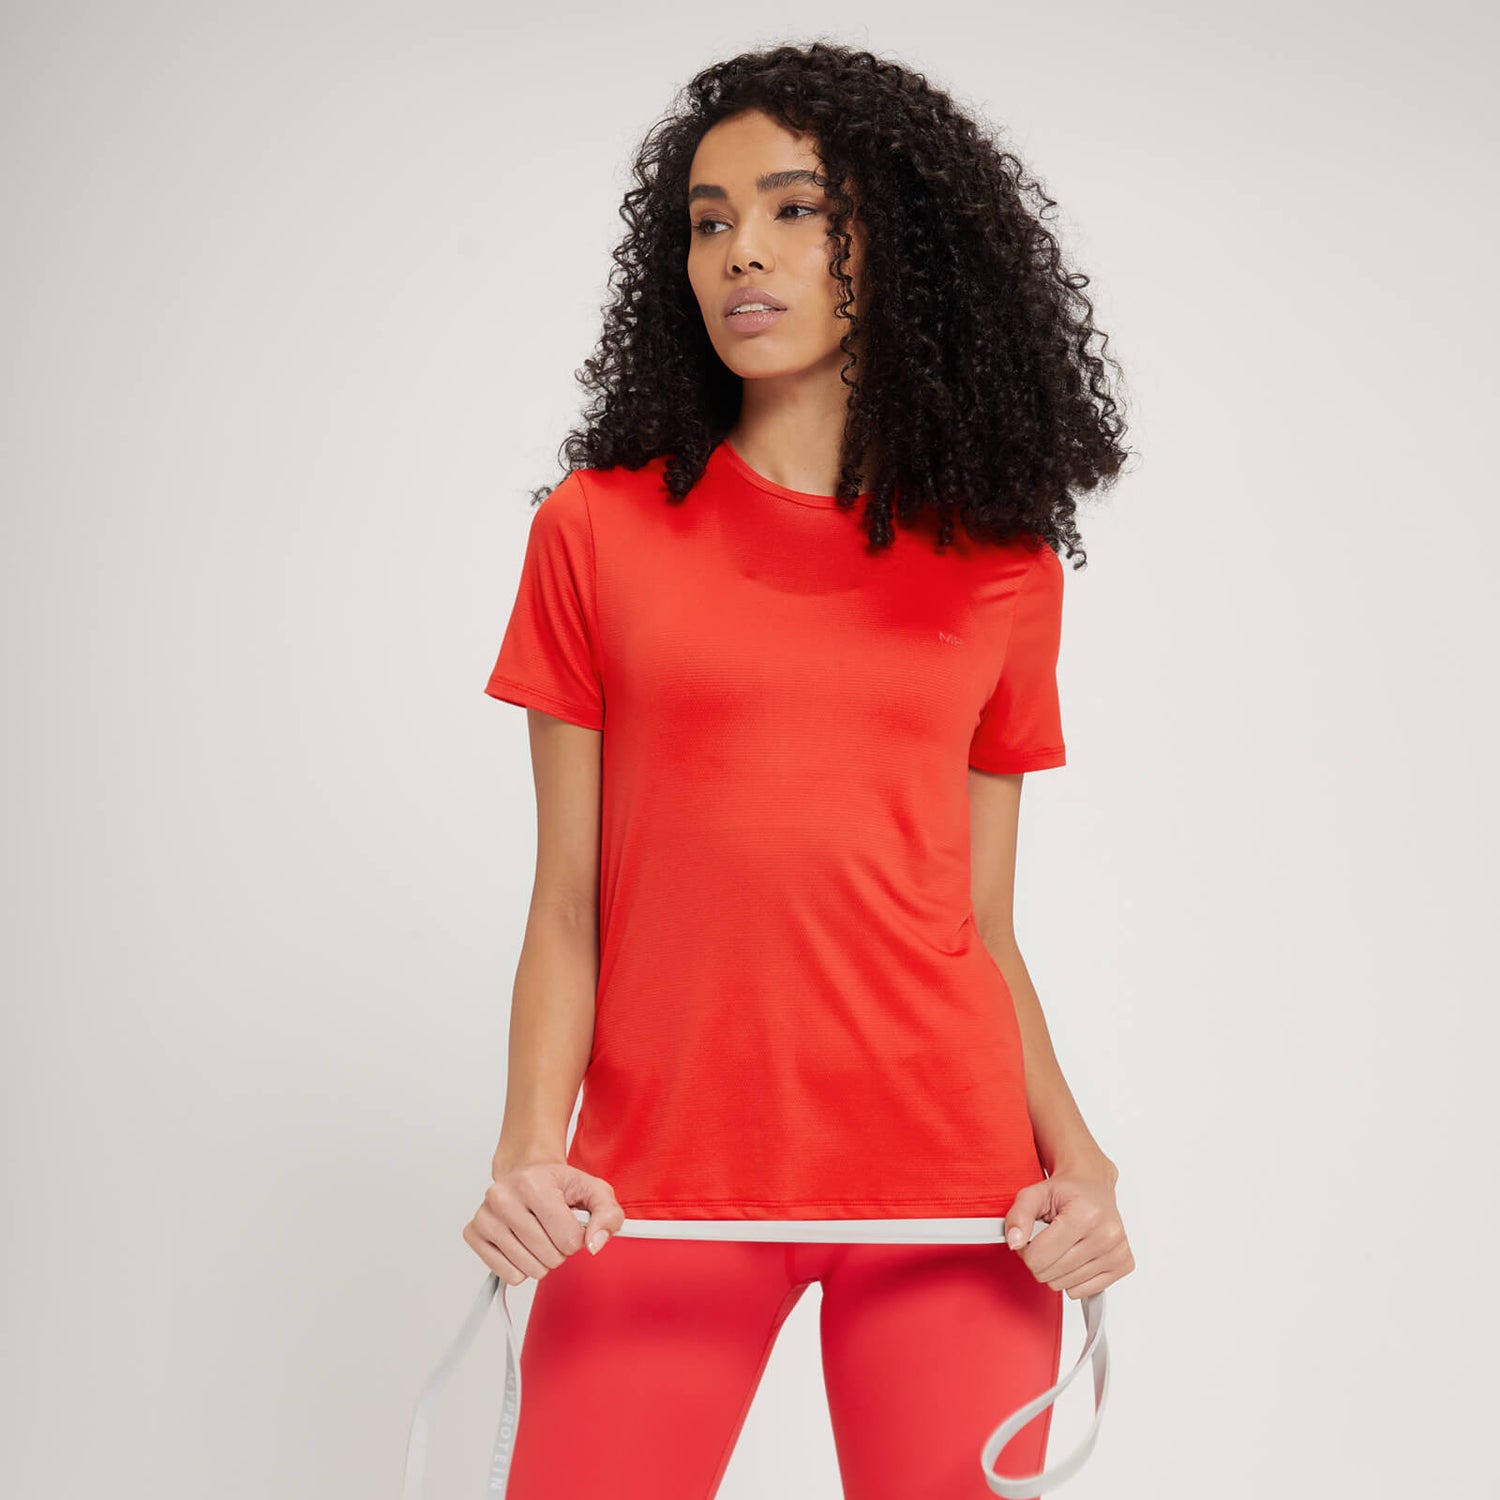 Camiseta con abertura en la espalda Power Ultra para mujer de MP - Rojo - XXS